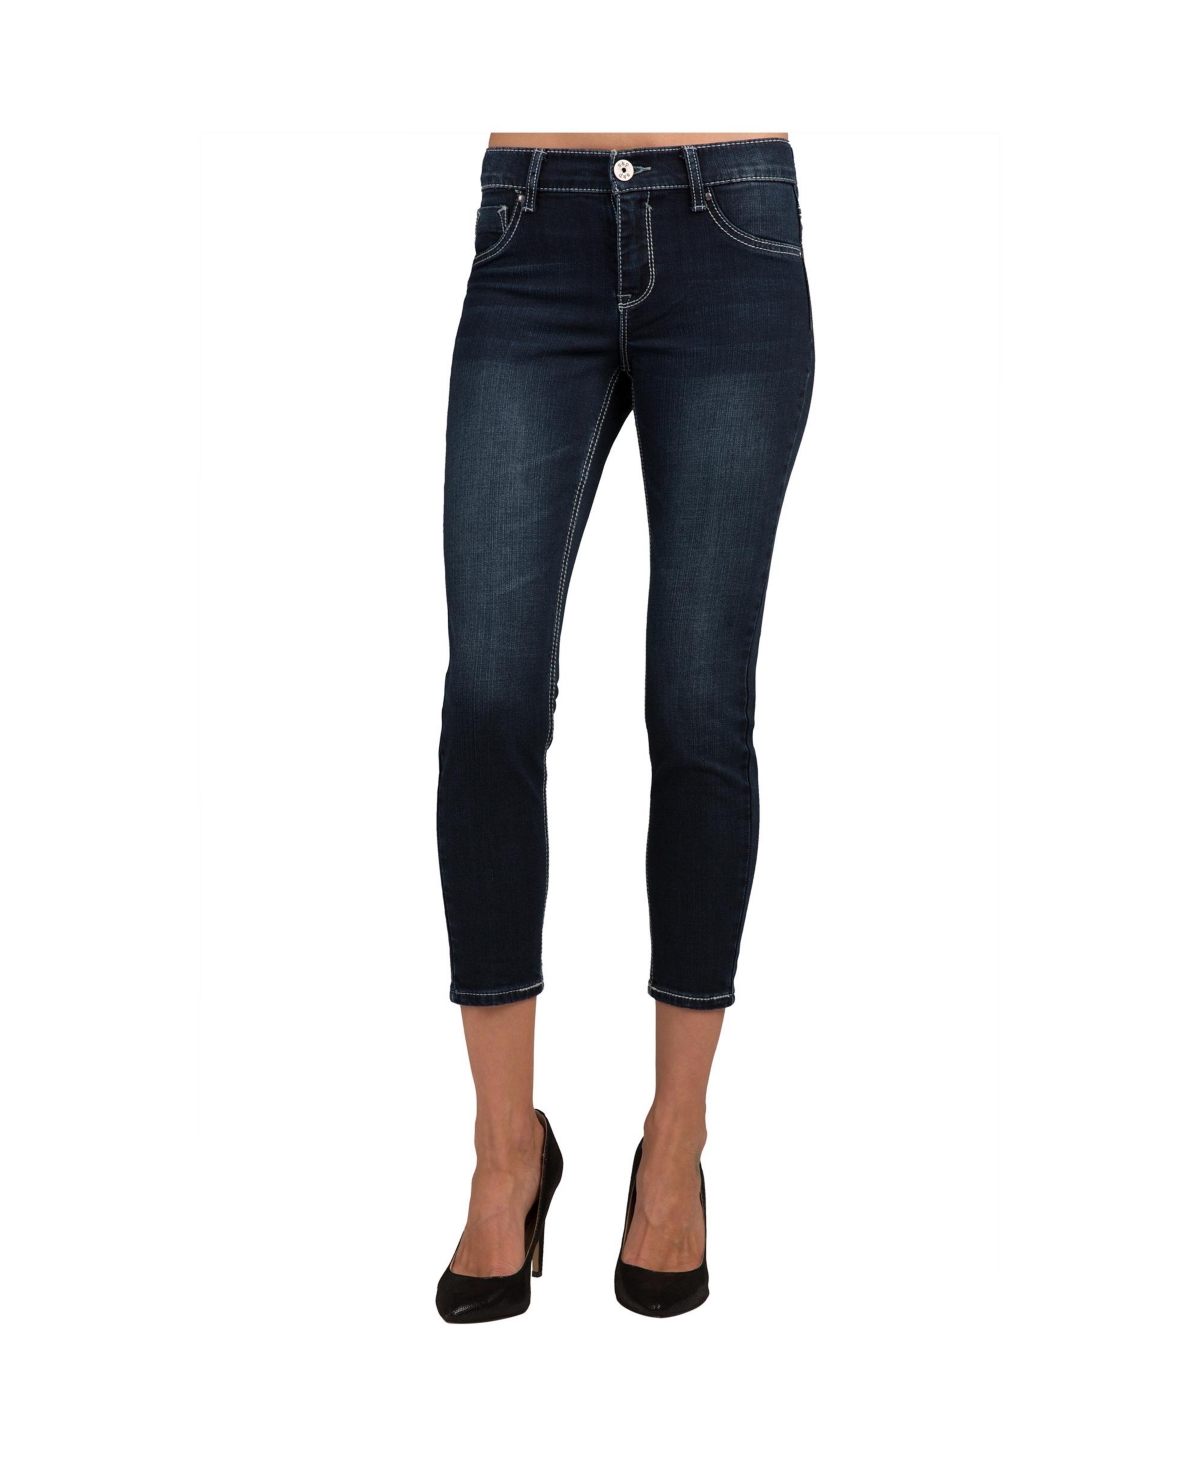 Women's Stretch Denim Cropped Skinny Jeans - Dark blue